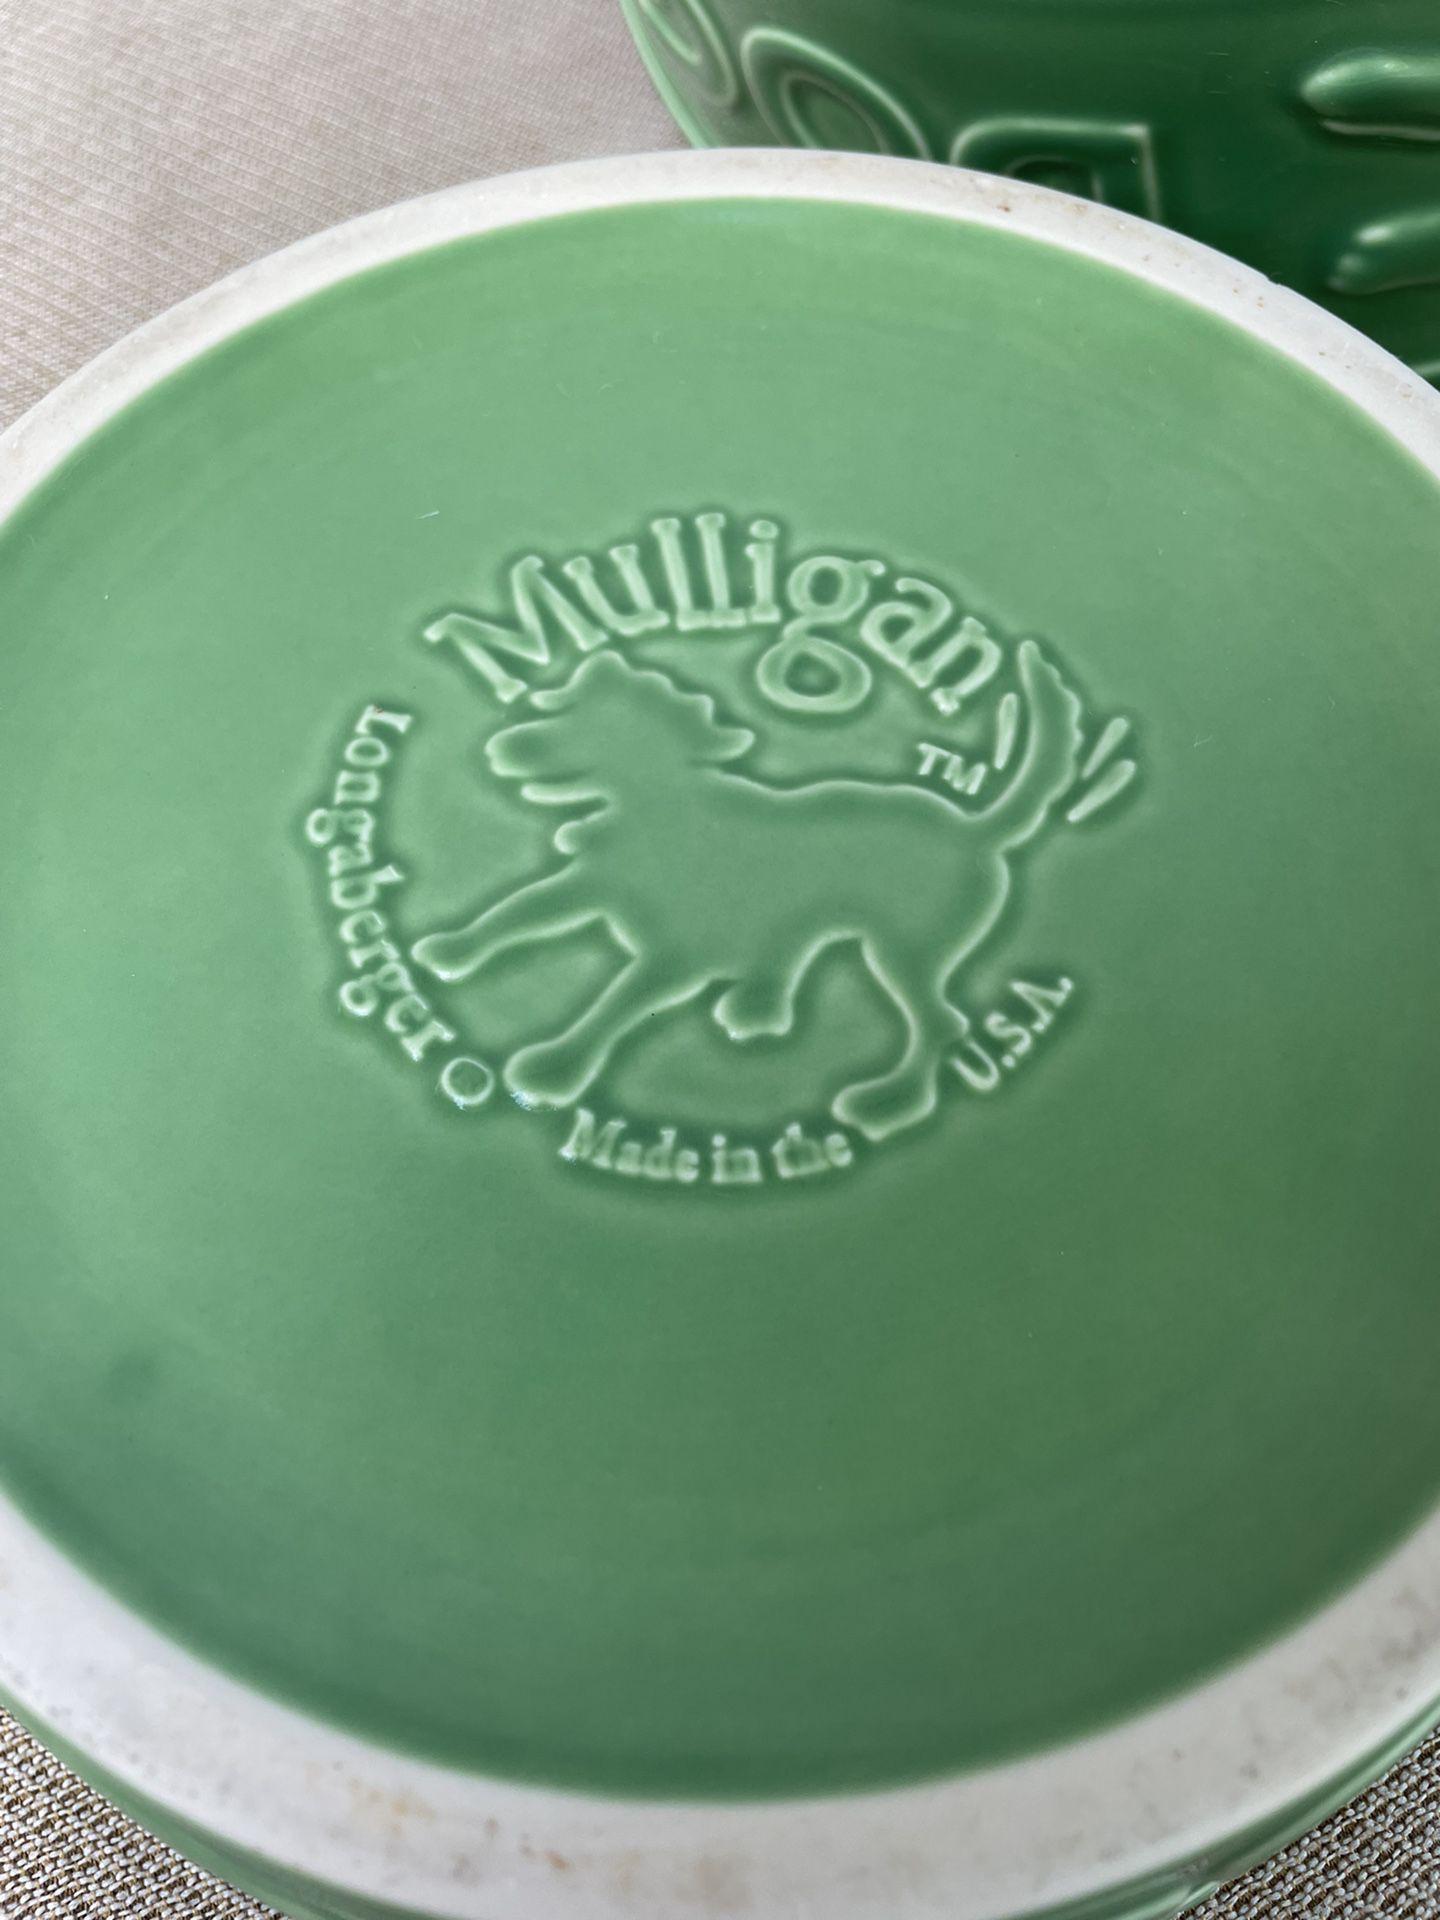 Longanberger Dog Bowls Mulligan In Green USA